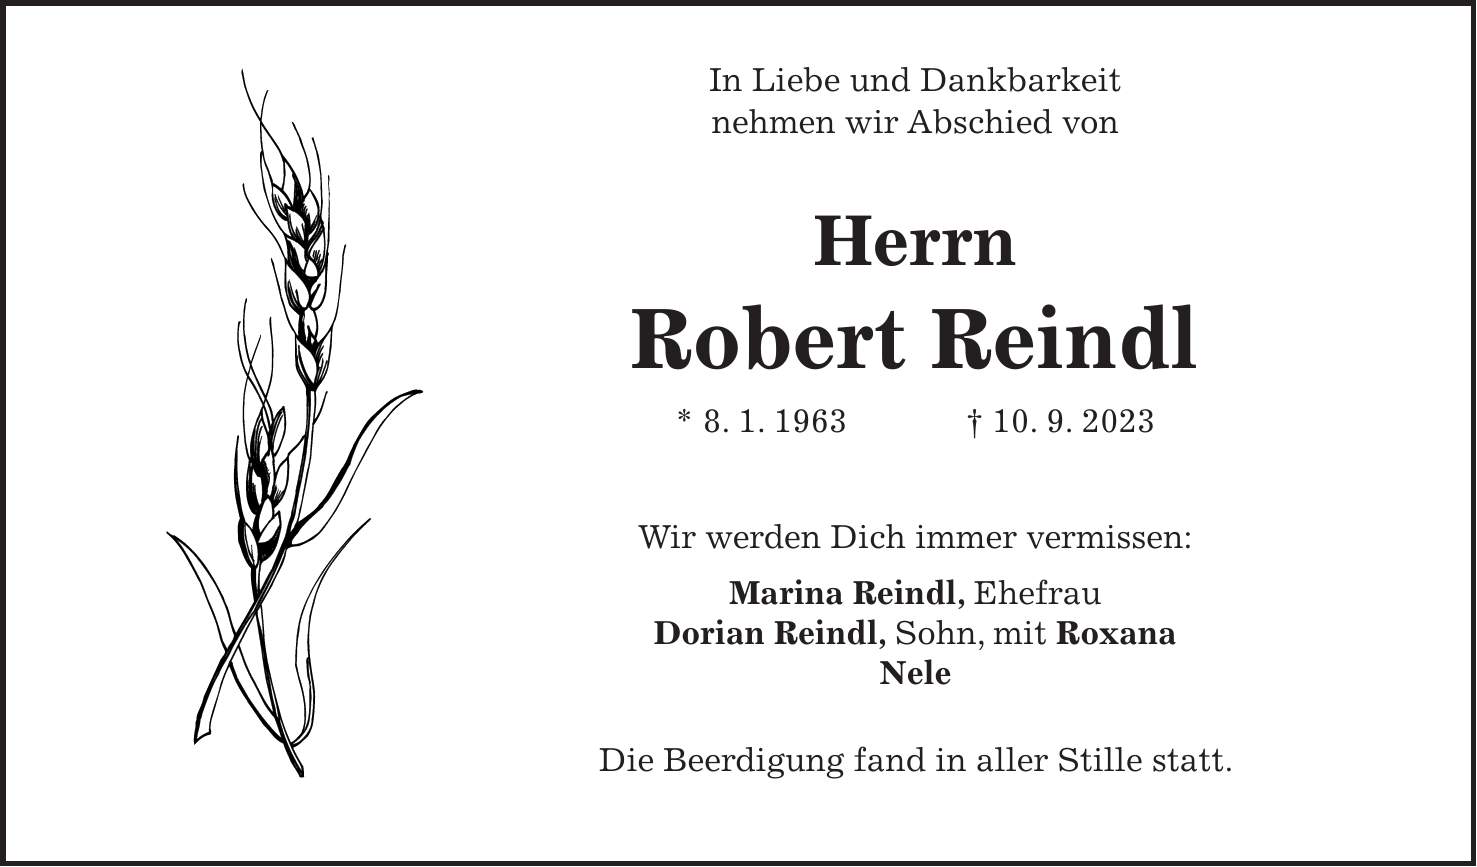 In Liebe und Dankbarkeit nehmen wir Abschied von Herrn Robert Reindl * 8. 1. 1963 + 10. 9. 2023 Wir werden Dich immer vermissen: Marina Reindl, Ehefrau Dorian Reindl, Sohn, mit Roxana Nele Die Beerdigung fand in aller Stille statt.